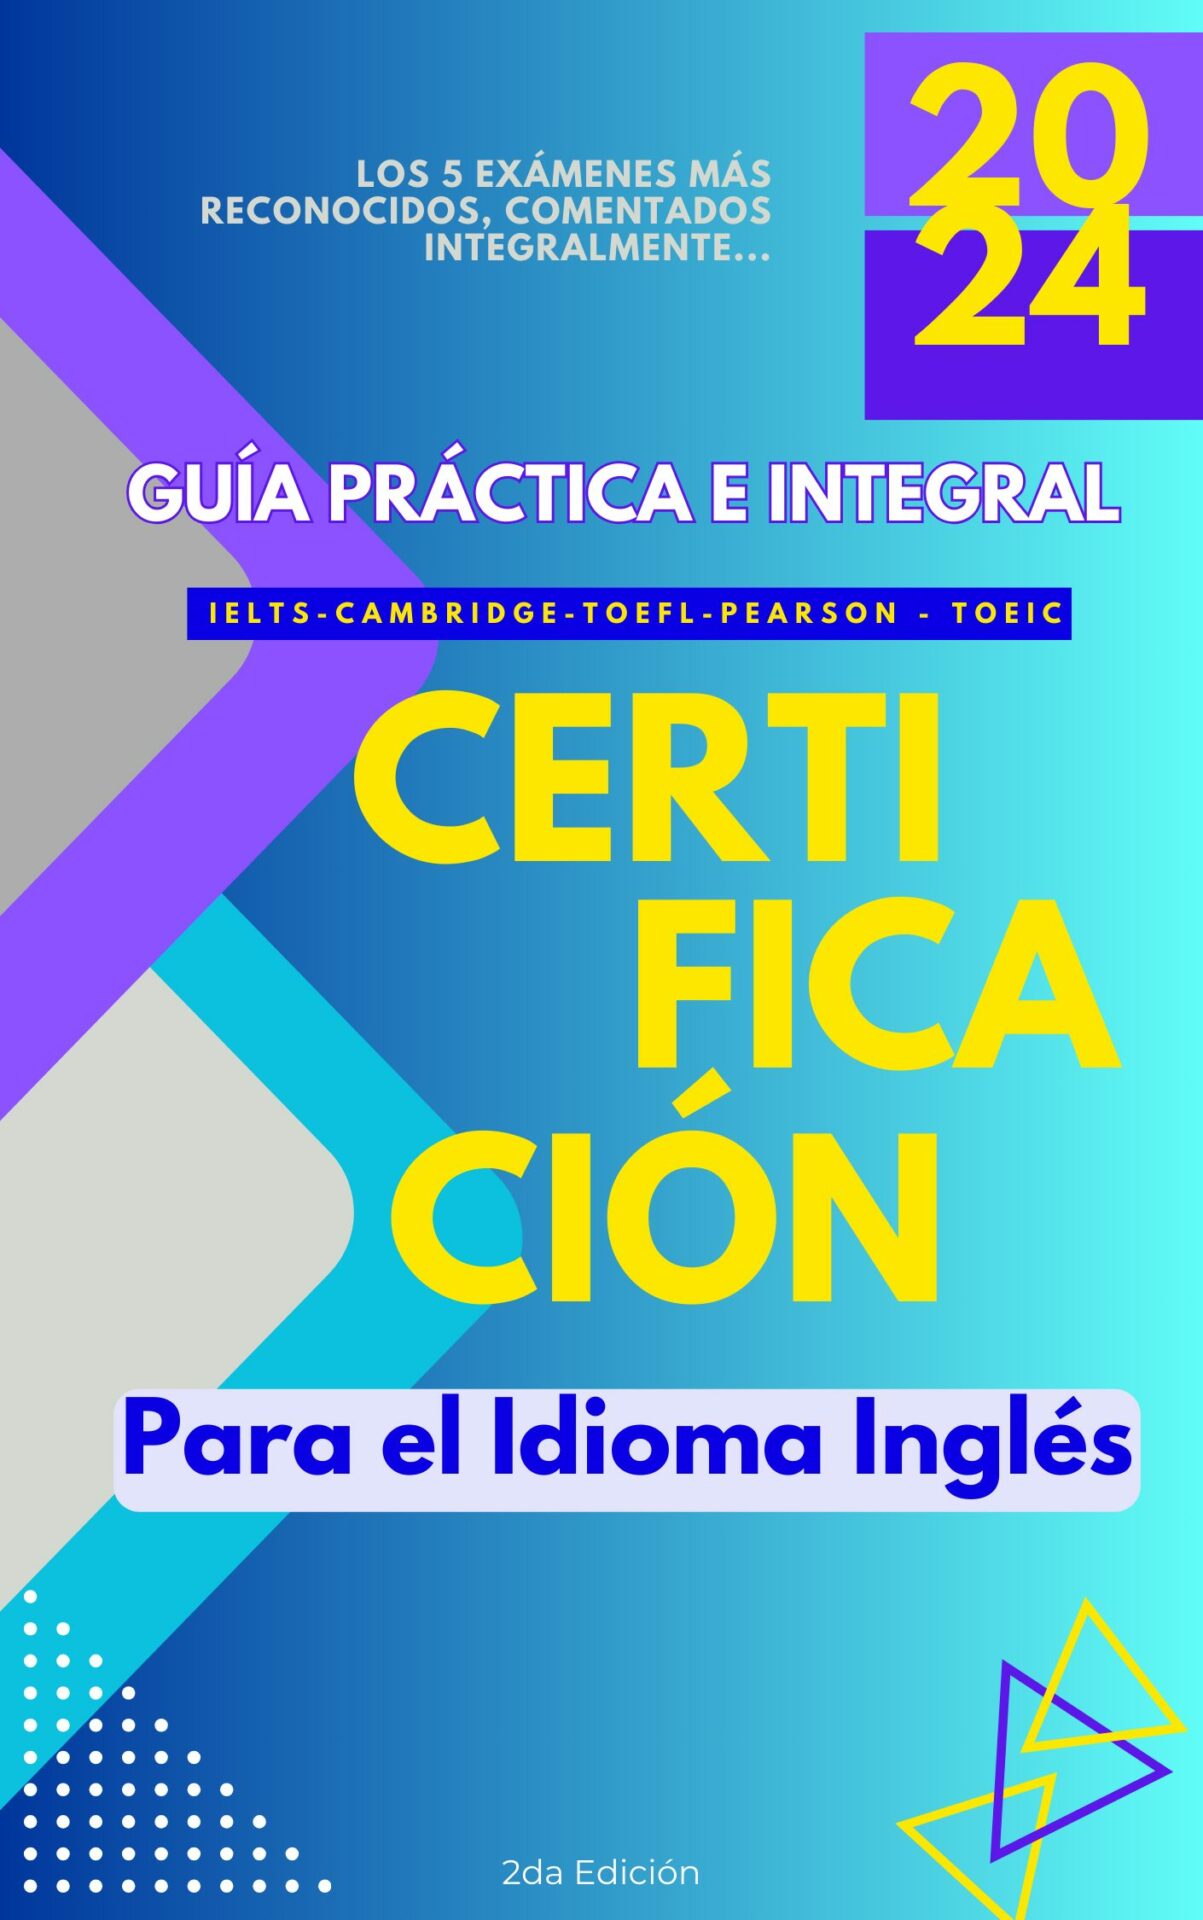 Certificación para idioma inglés-Cover-Ebook-2024-Guia-Certificaci[on